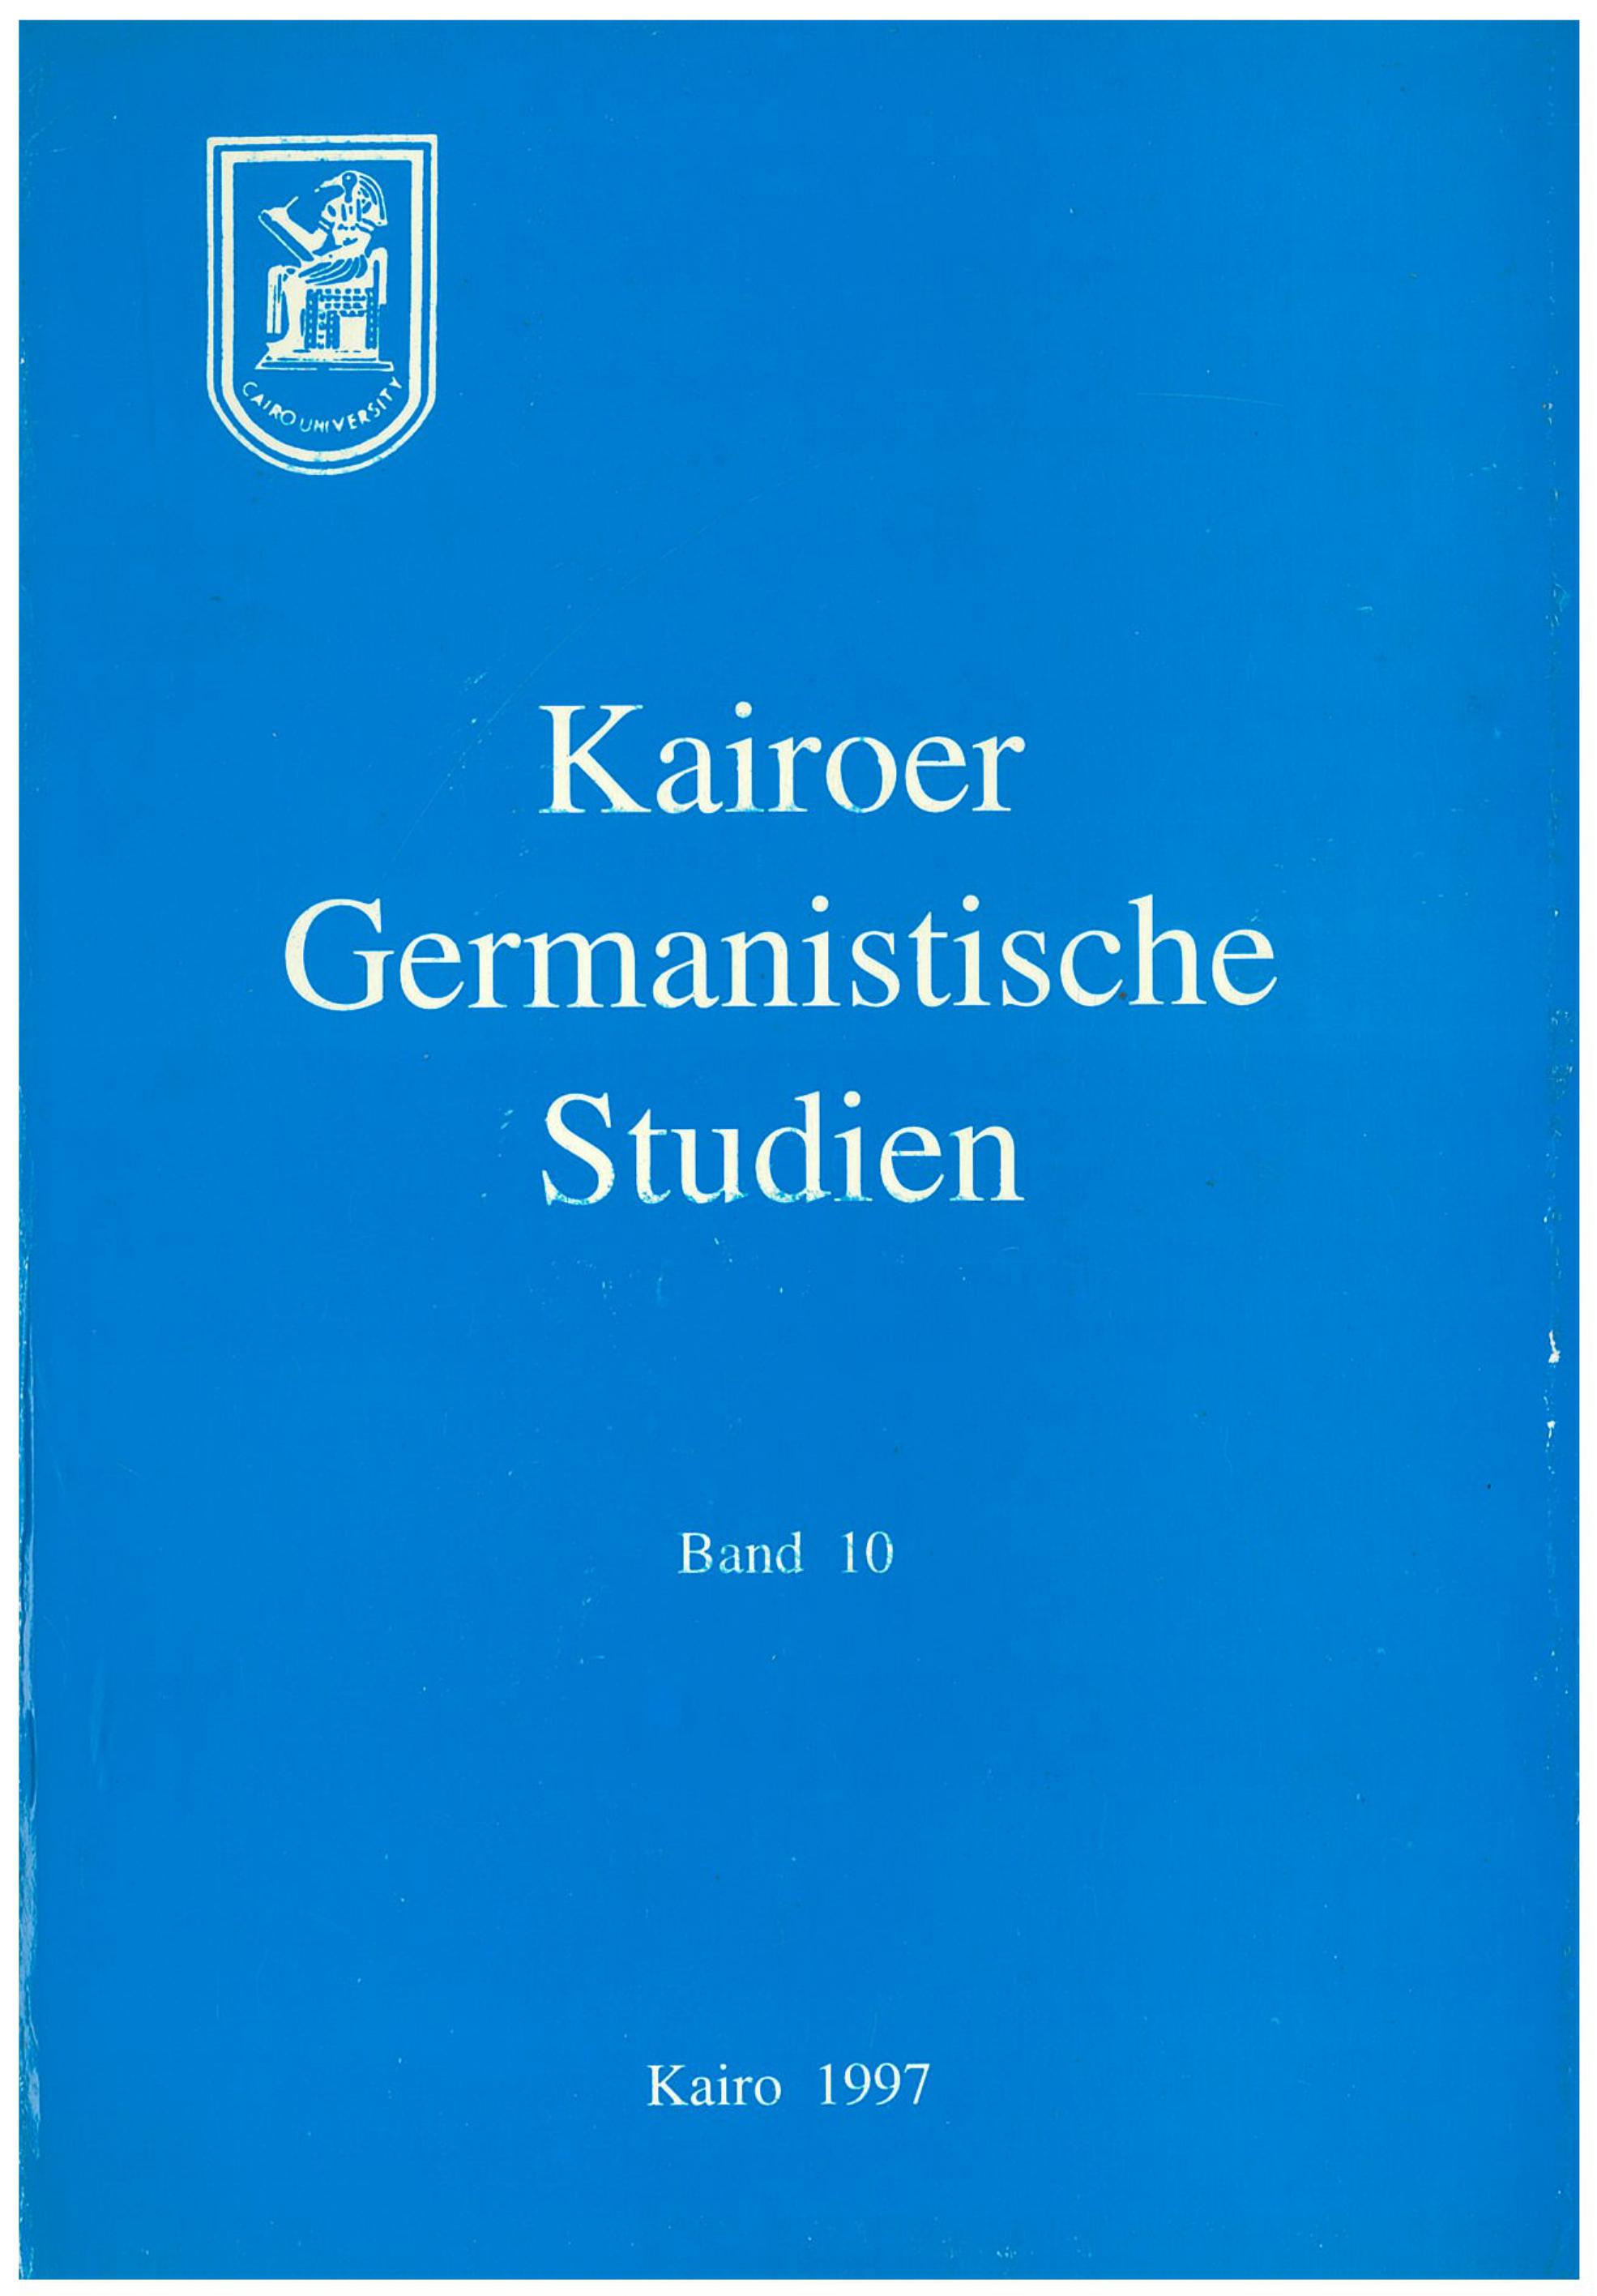 Kairoer Germanistische Studien